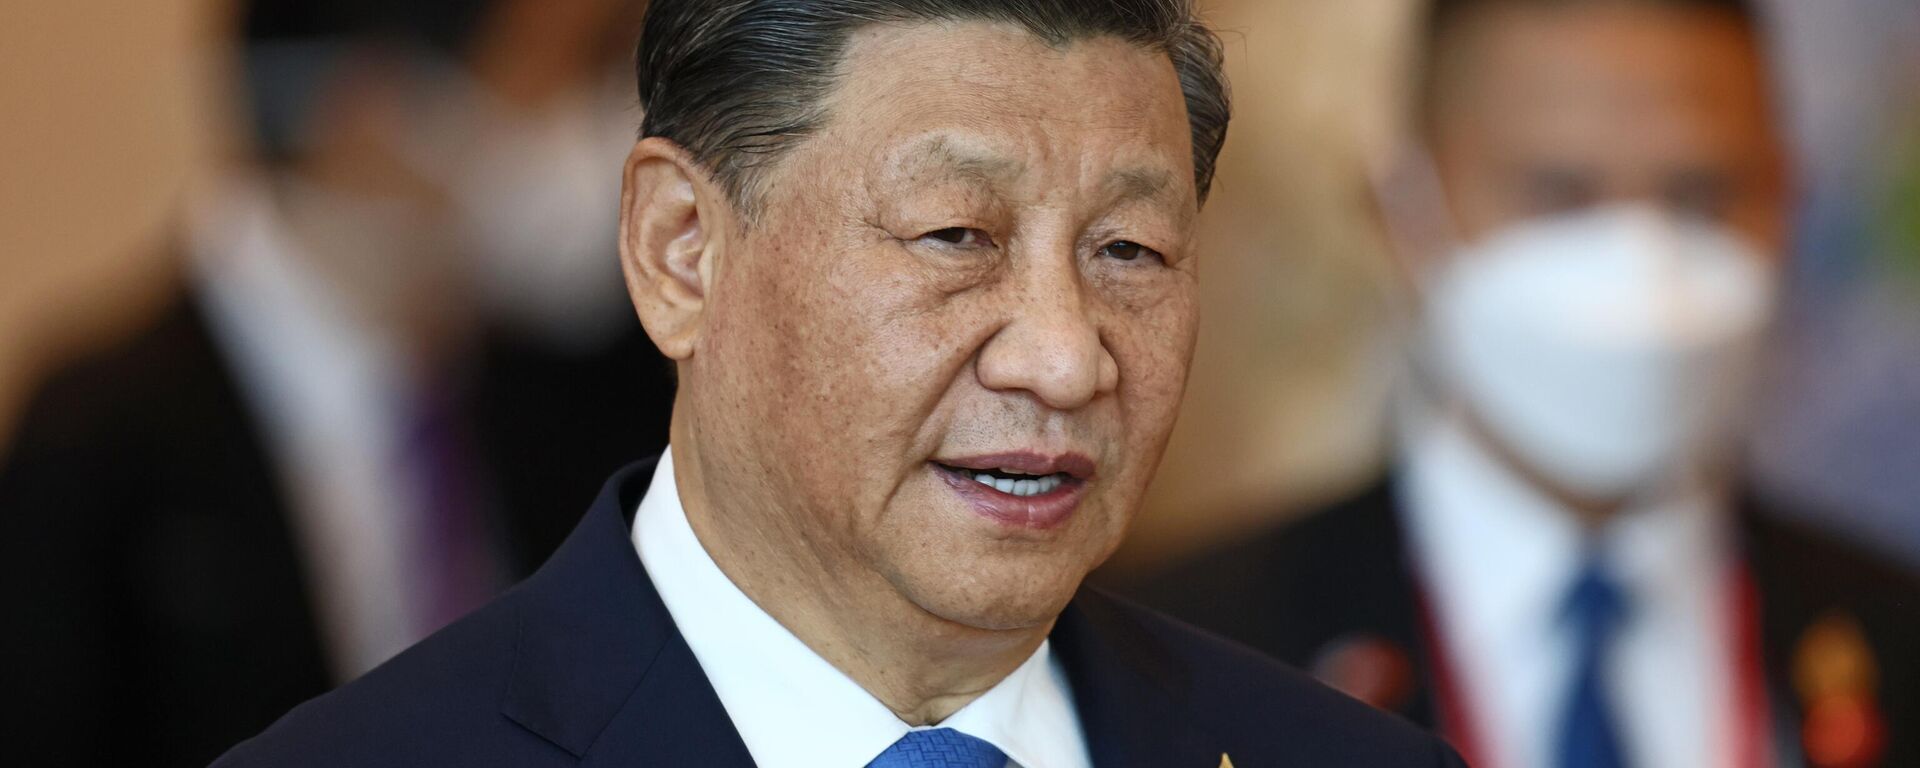 Xi Jinping, presidente de China, en la Reunión de Líderes Económicos de la APEC durante la cumbre del Foro de Cooperación Económica Asia-Pacífico, en Bangkok, Tailandia, el 19 de noviembre de 2022 - Sputnik Mundo, 1920, 26.12.2023